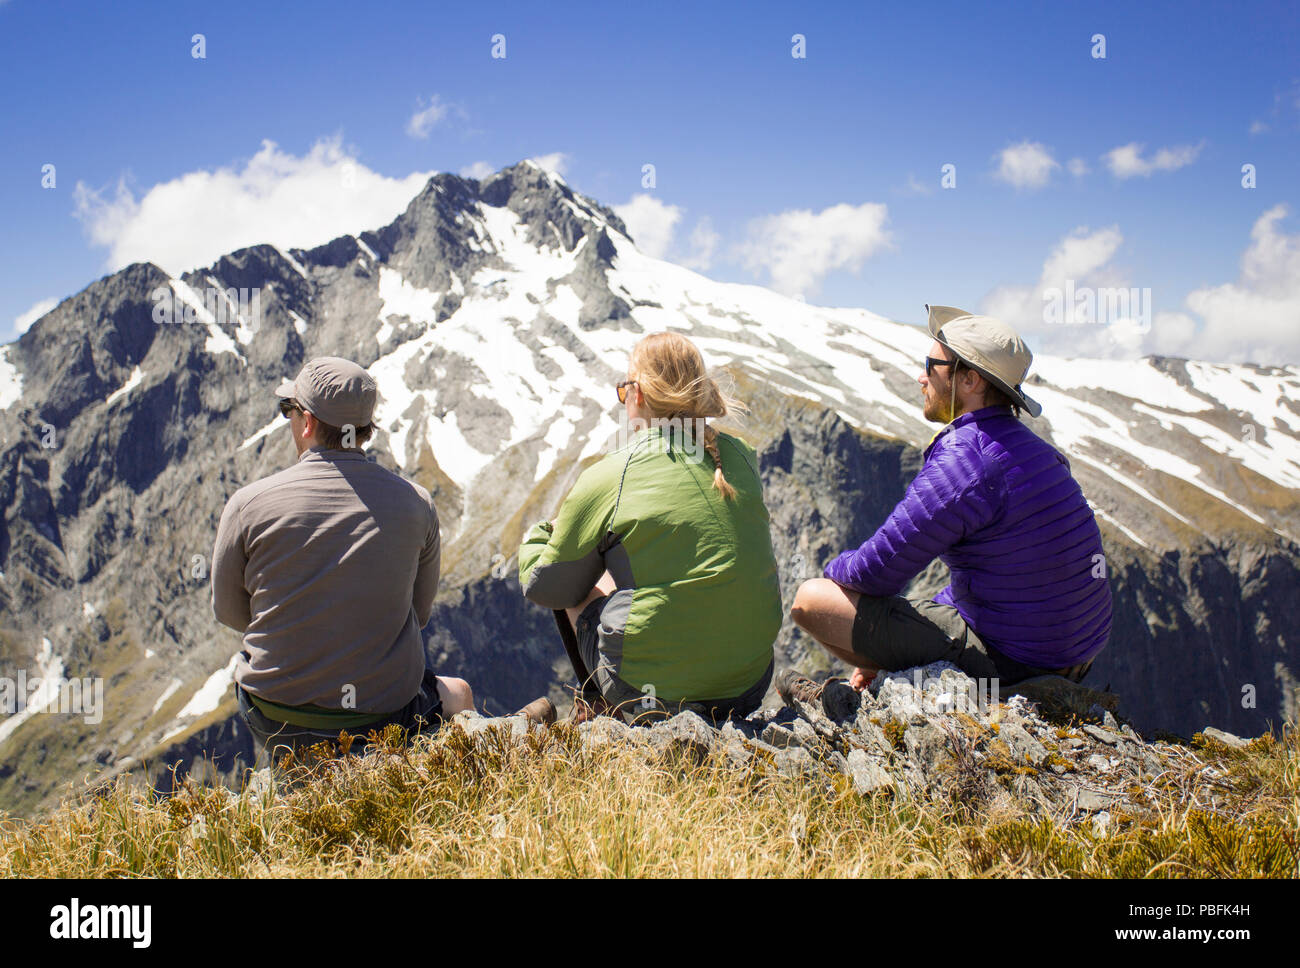 Nuova Zelanda aka Aotearoa, Isola del Sud, Mt Aspiring National Park, Gillespie Pass, gruppo guardando dalla montagna. Modello rilasciato. Foto Stock